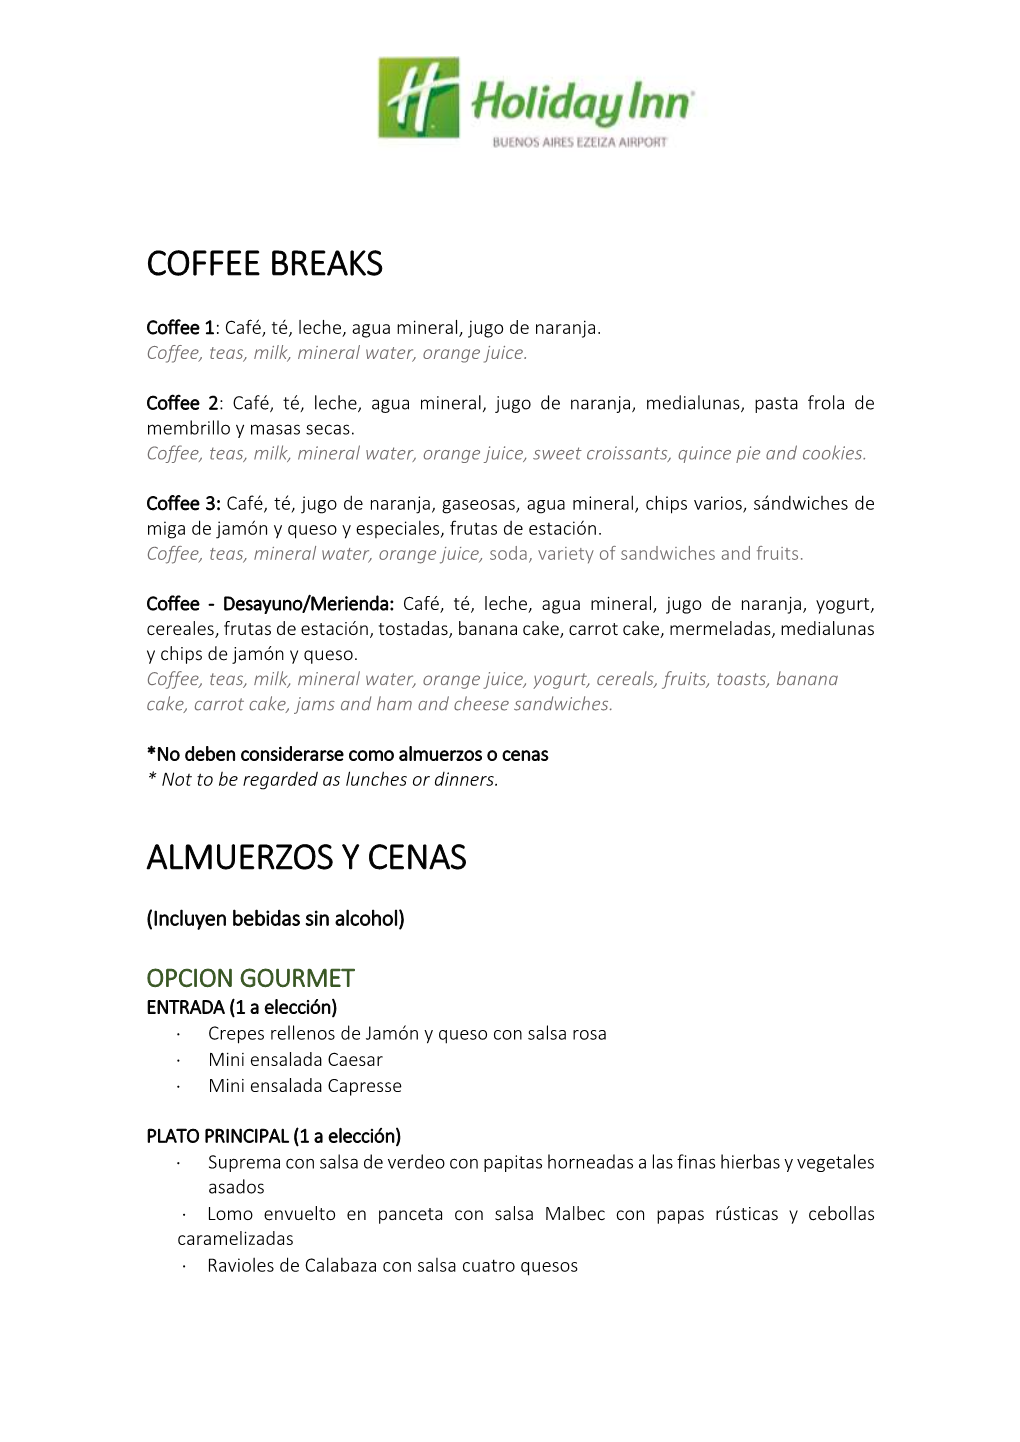 Coffee Breaks Almuerzos Y Cenas